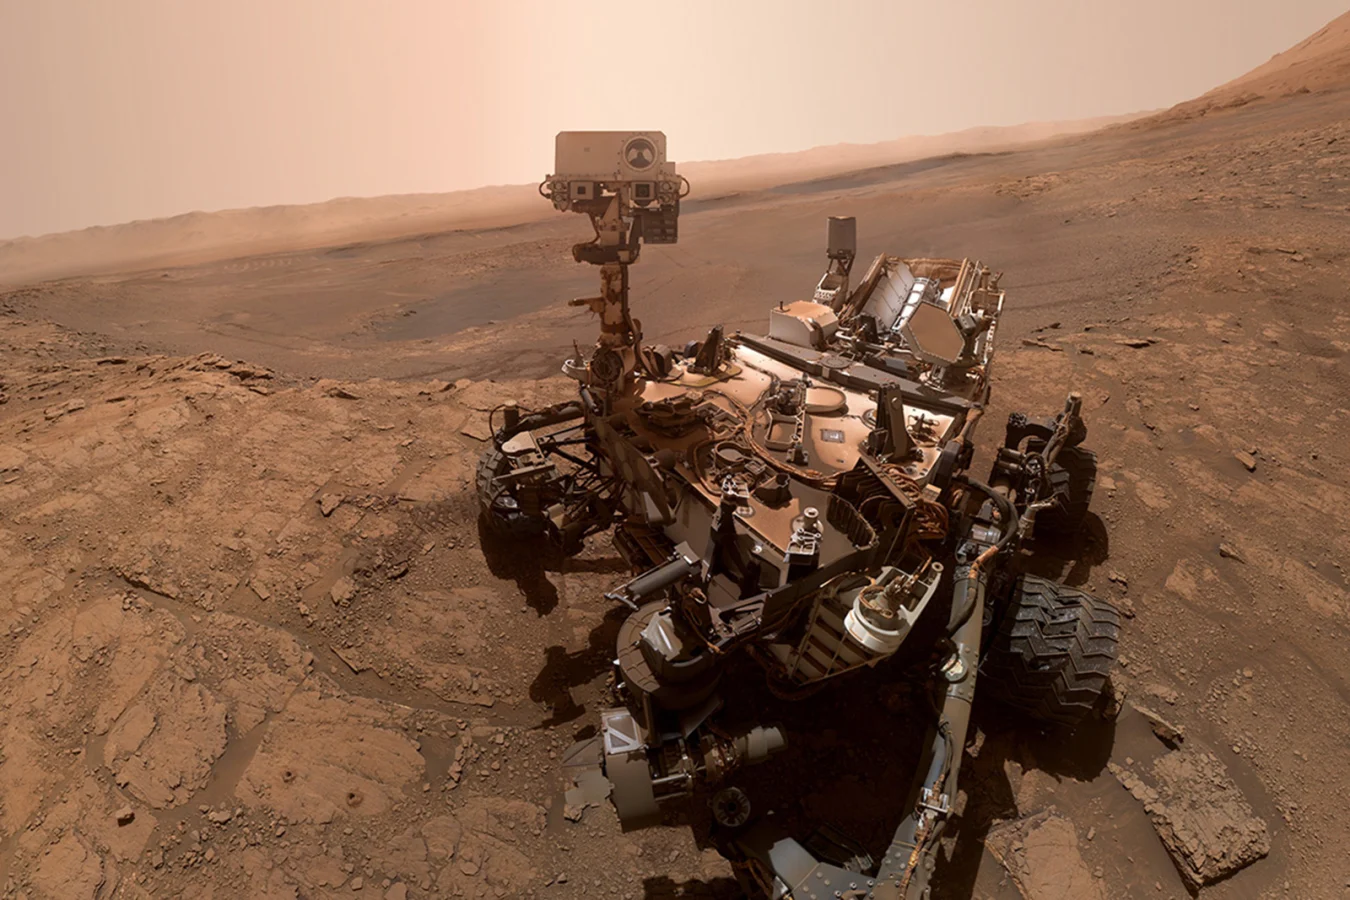 NASA Curiosity Mars rover selfie from October 11th, 2019